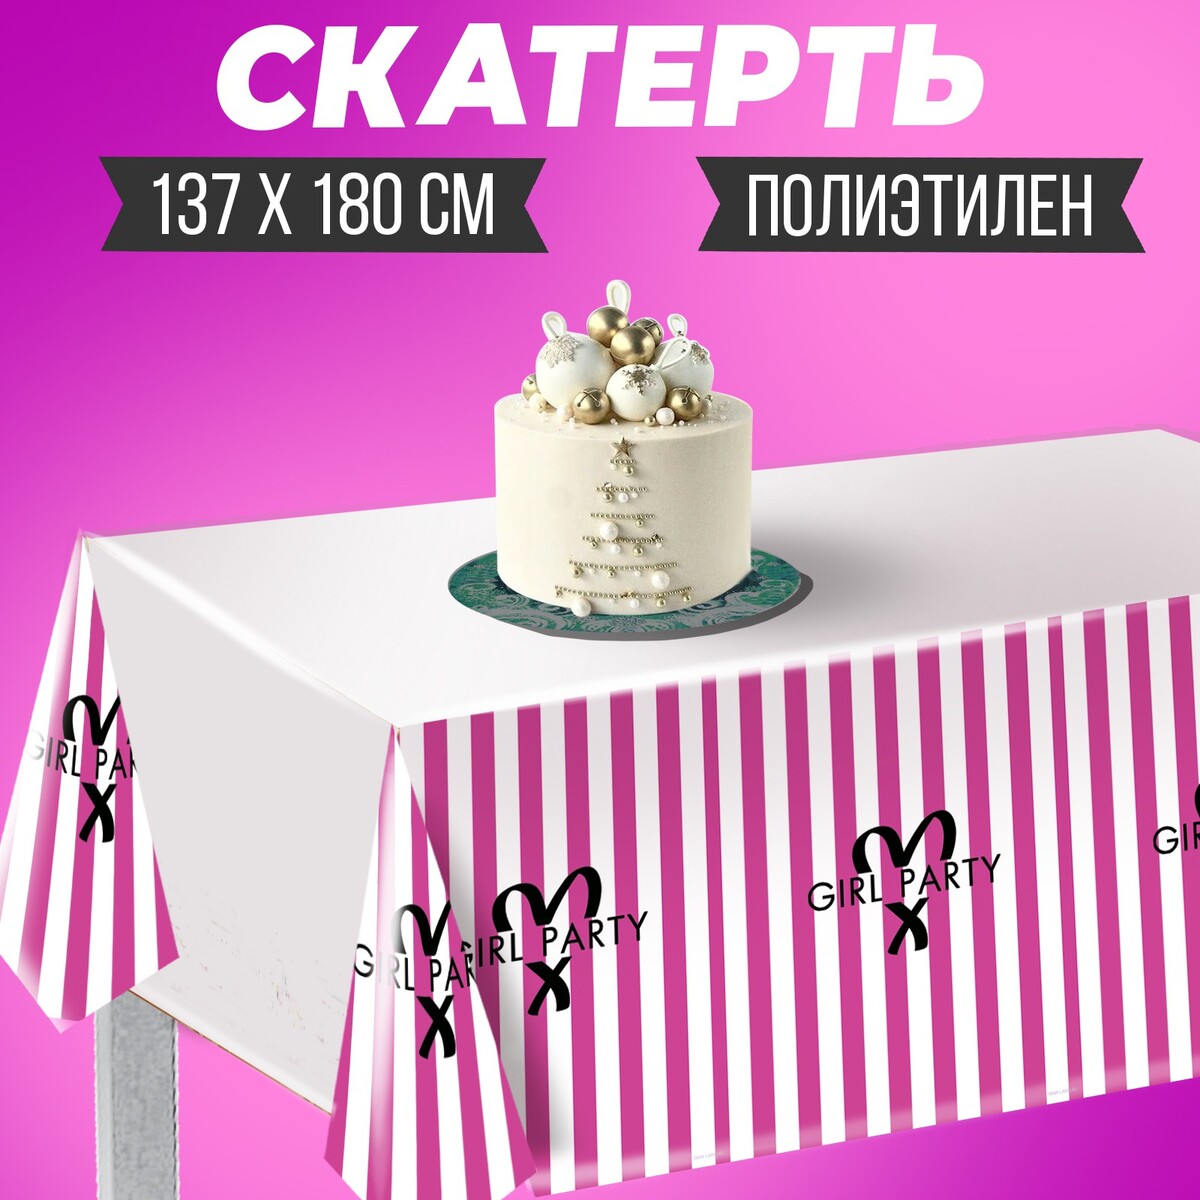 Скатерть girl party, 137 × 180 см, полиэтилен